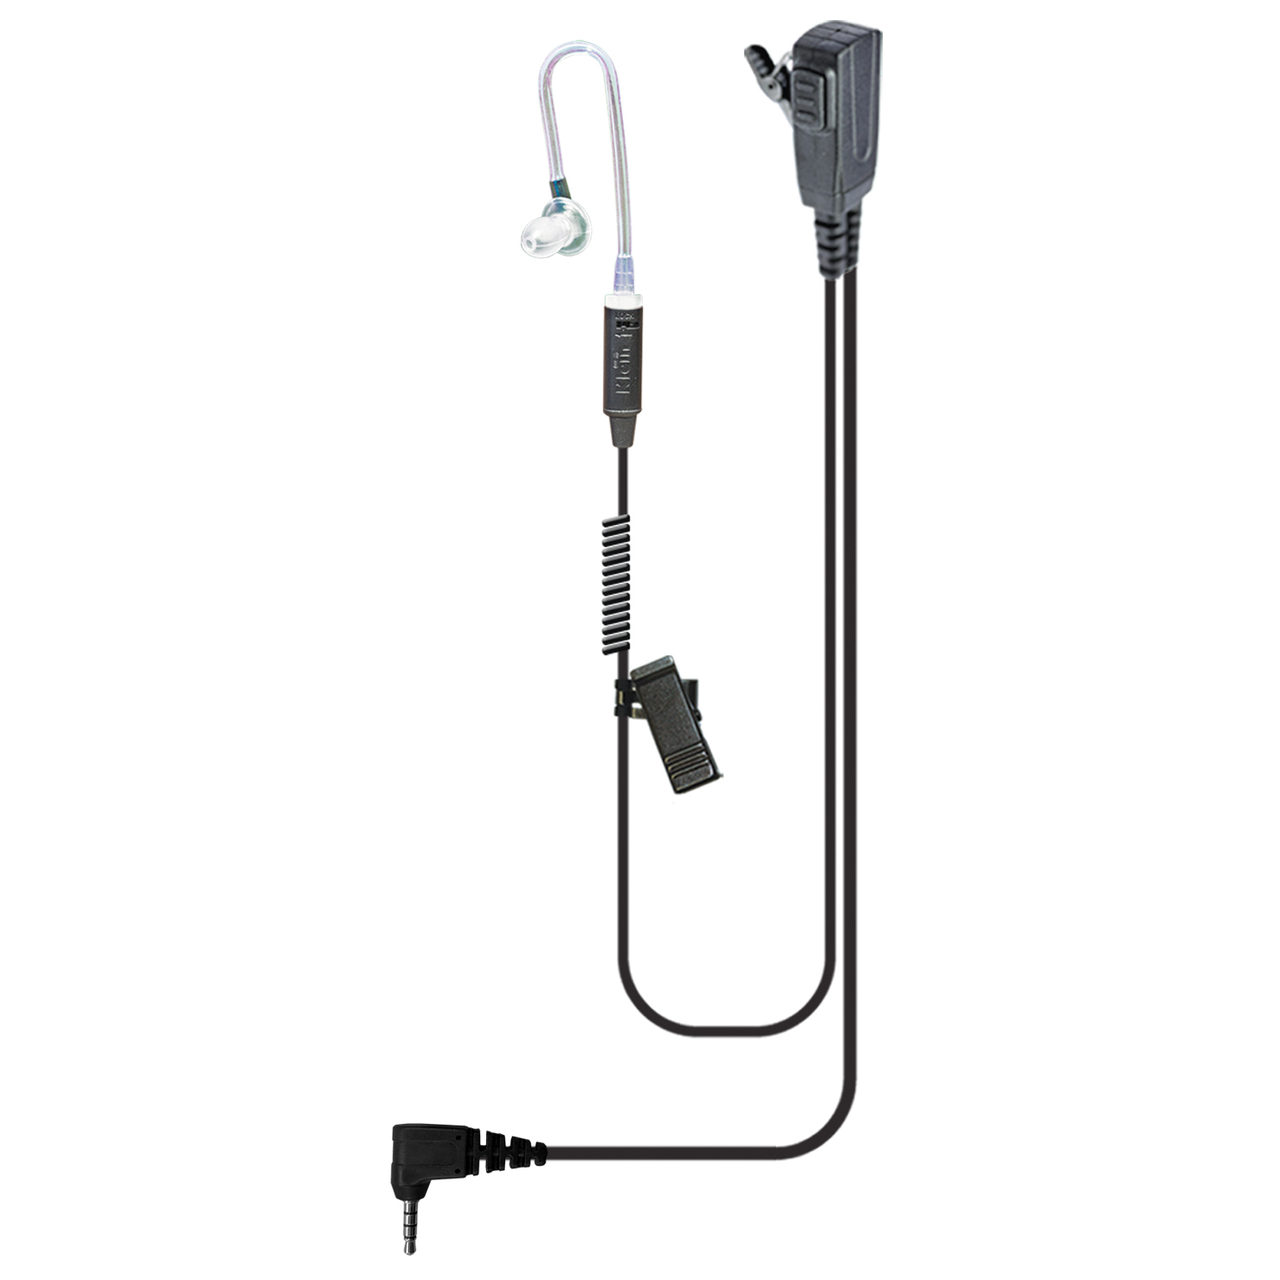 Signal-Pro Split-Wire Earpiece for Sonim XP3 Phones  kleinelectronics.com 59.95